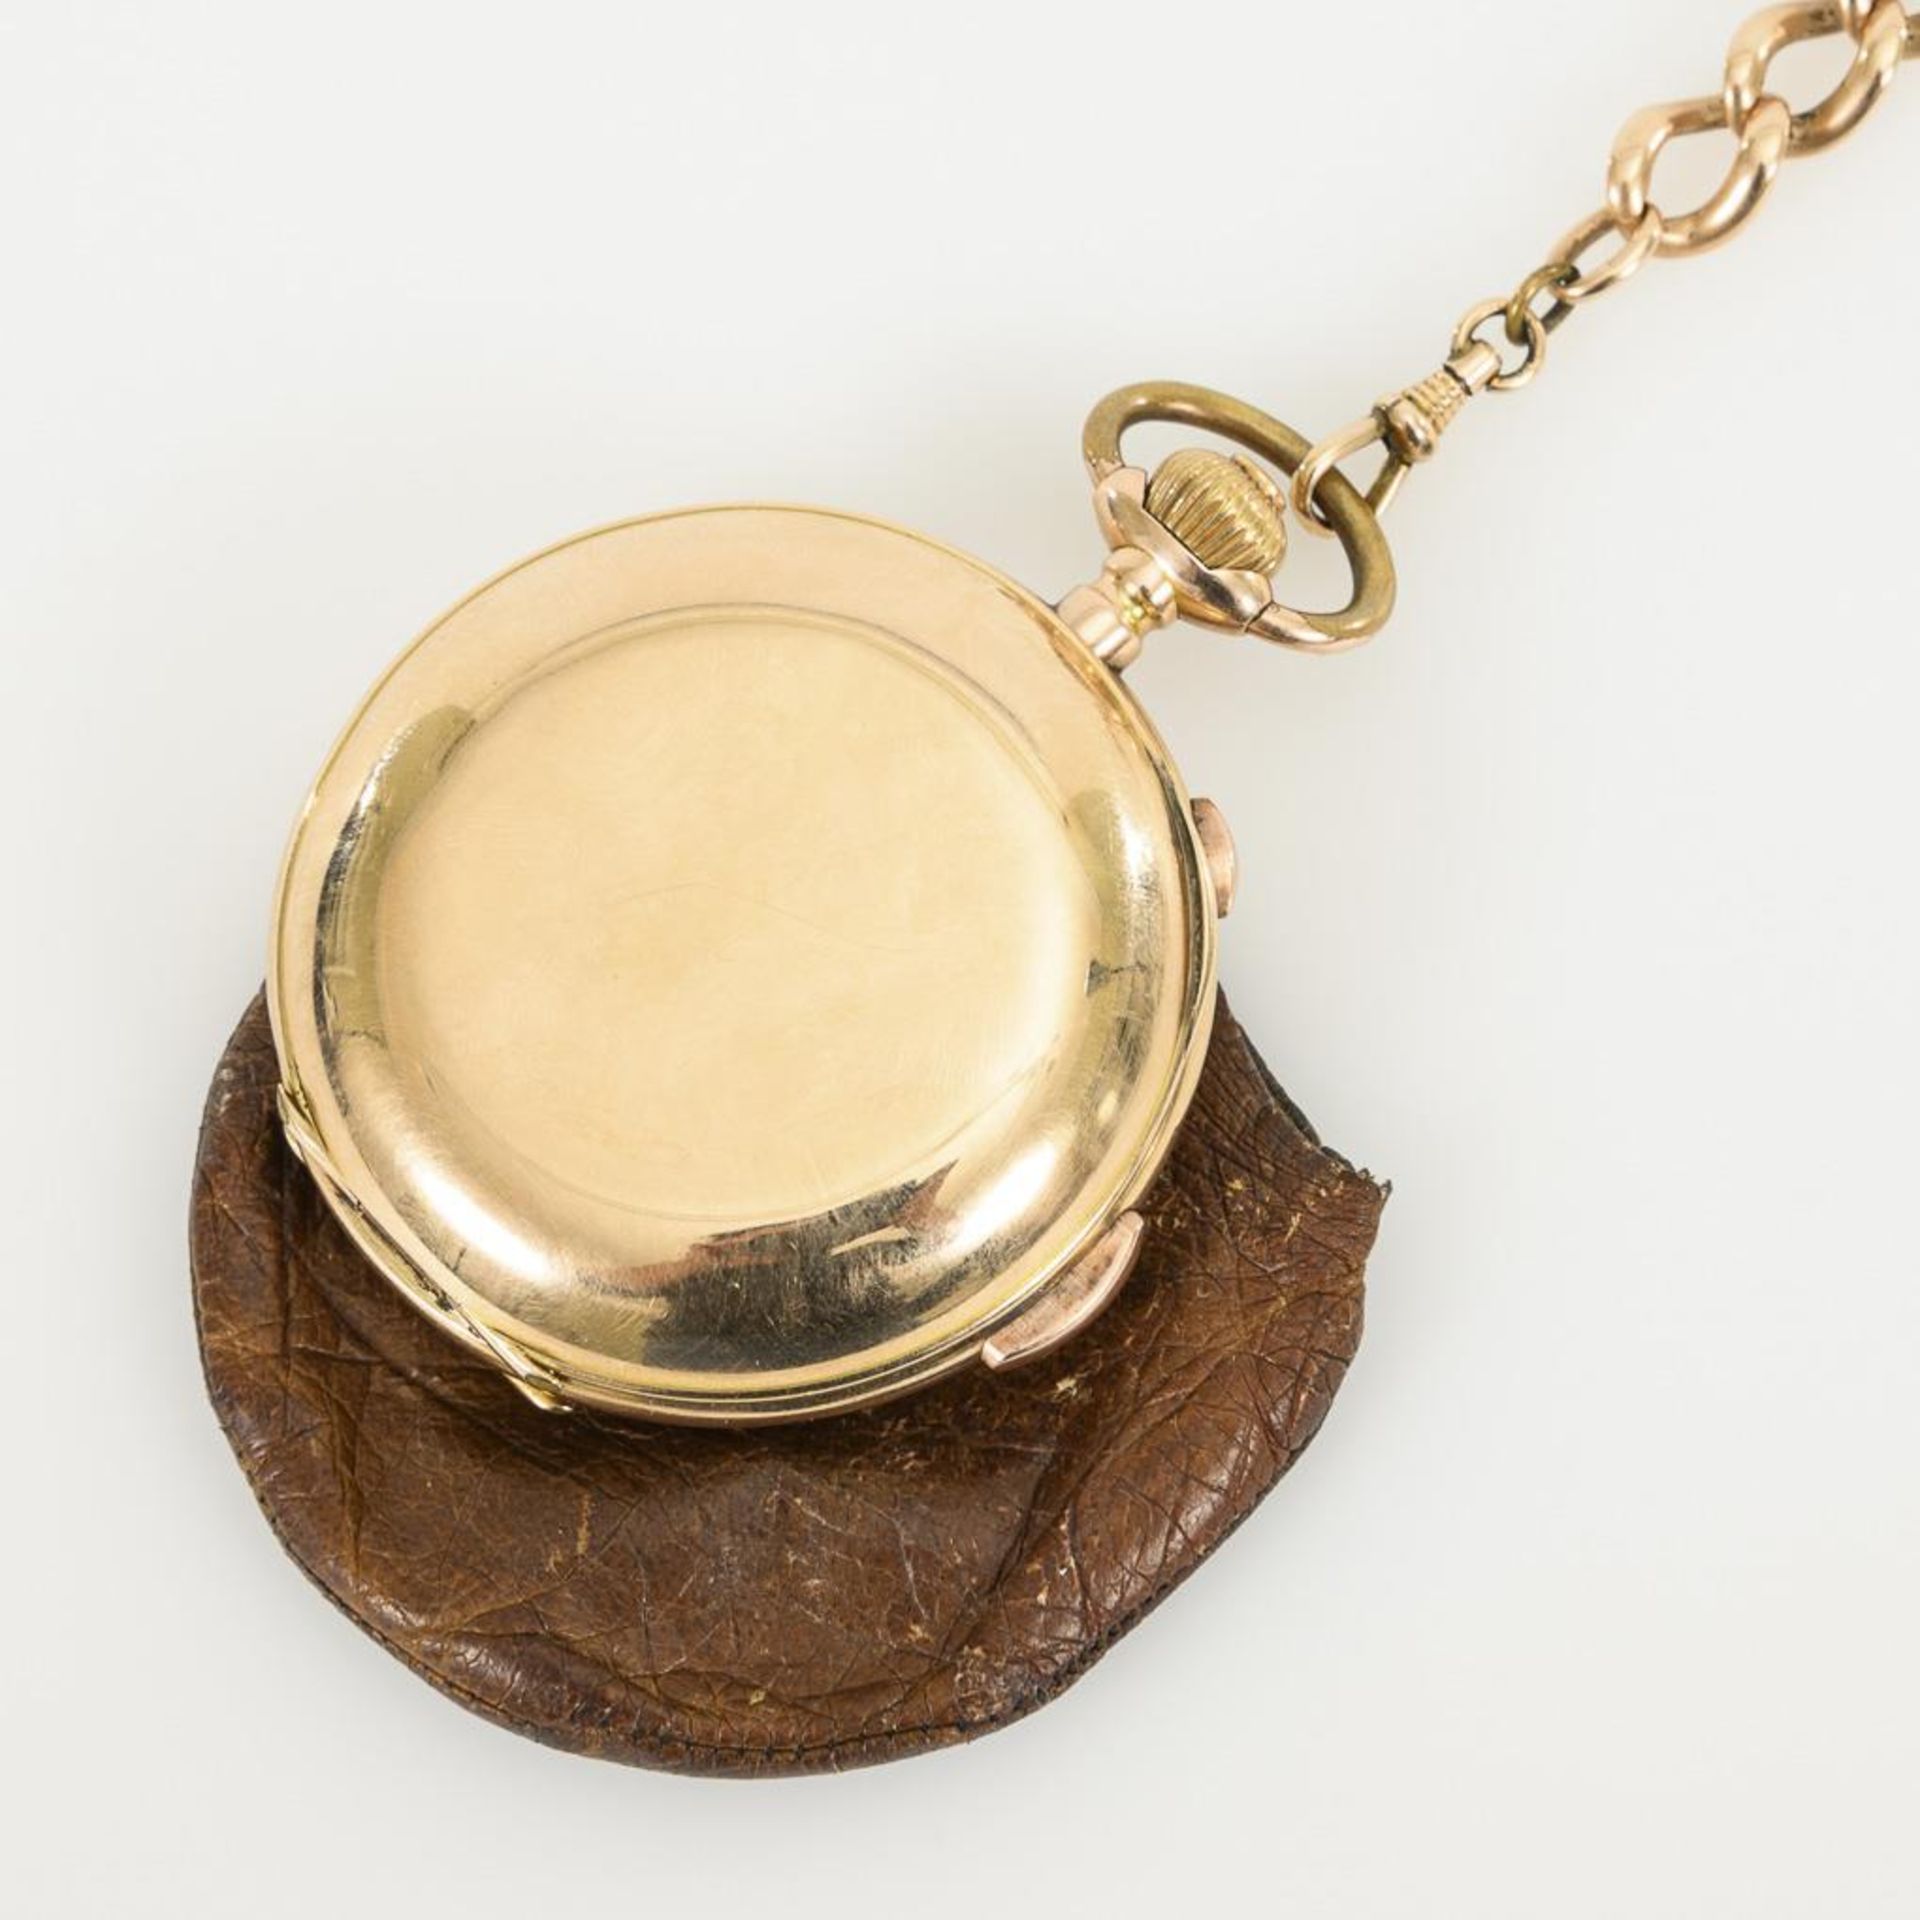 Goldene Savonnette mit Minutenrepetition und Chronograph an goldener Uhrenkette. - Image 3 of 5